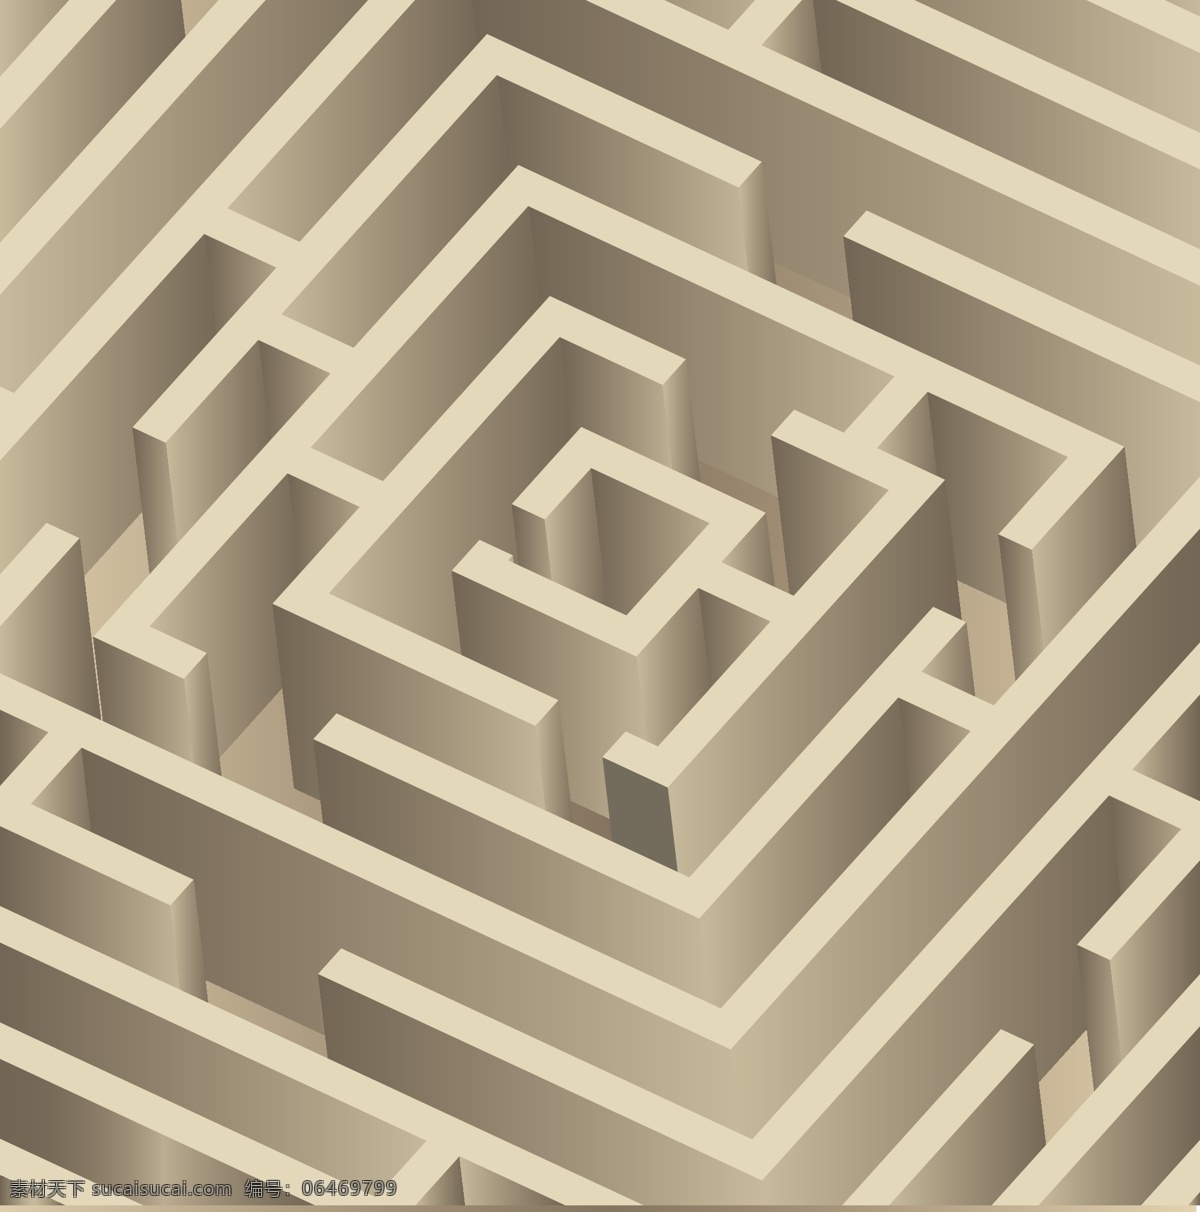 立体 迷宫 矢量 模板下载 立体迷宫 迷宫背景 迷宫设计 生活百科 矢量素材 灰色